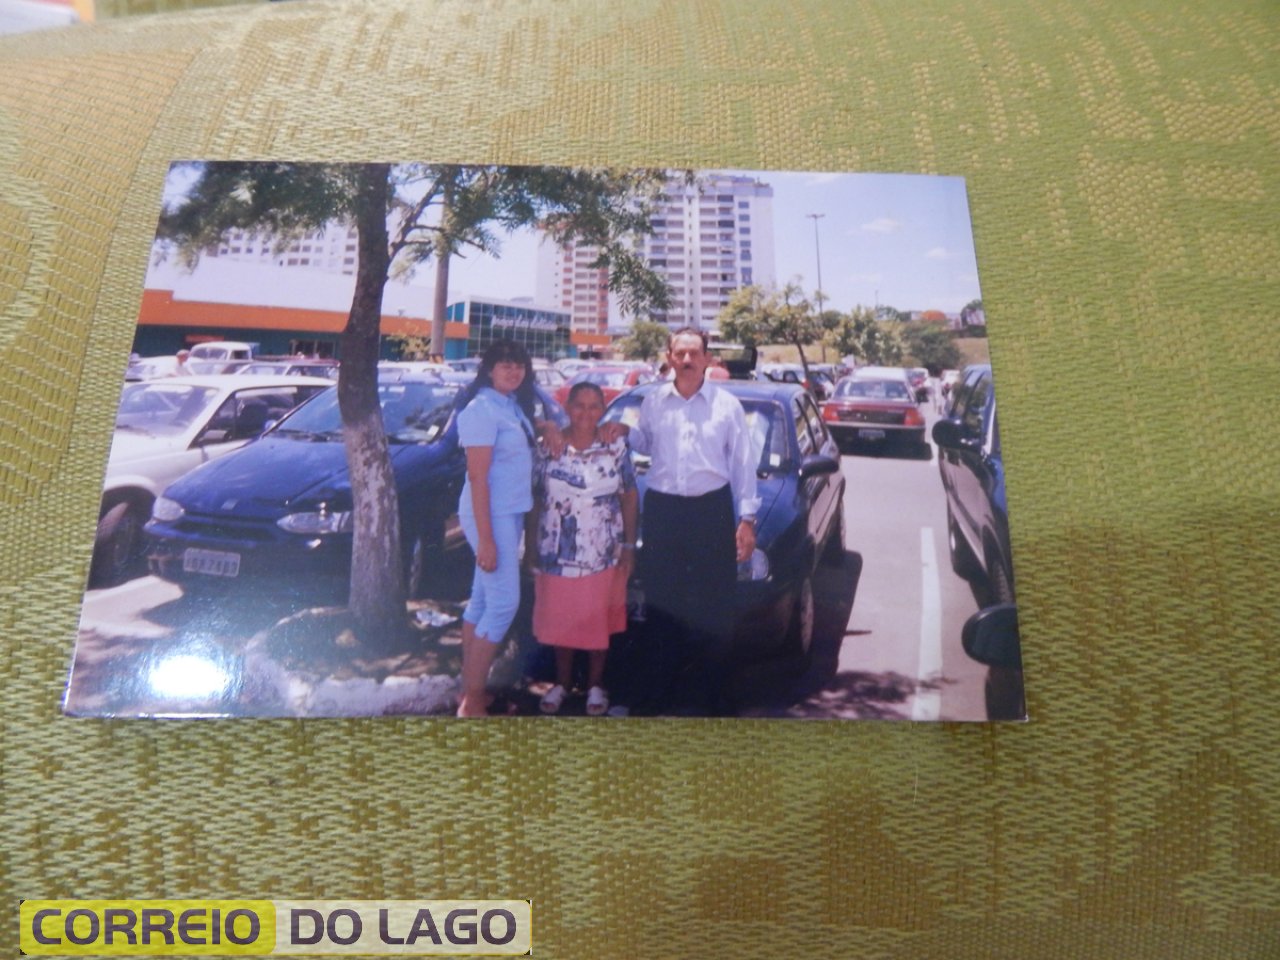 Marcelino Galvão e Ana Galvão e a filha Vera Galvão em Porto Alegre a passeio. Década de 2000.